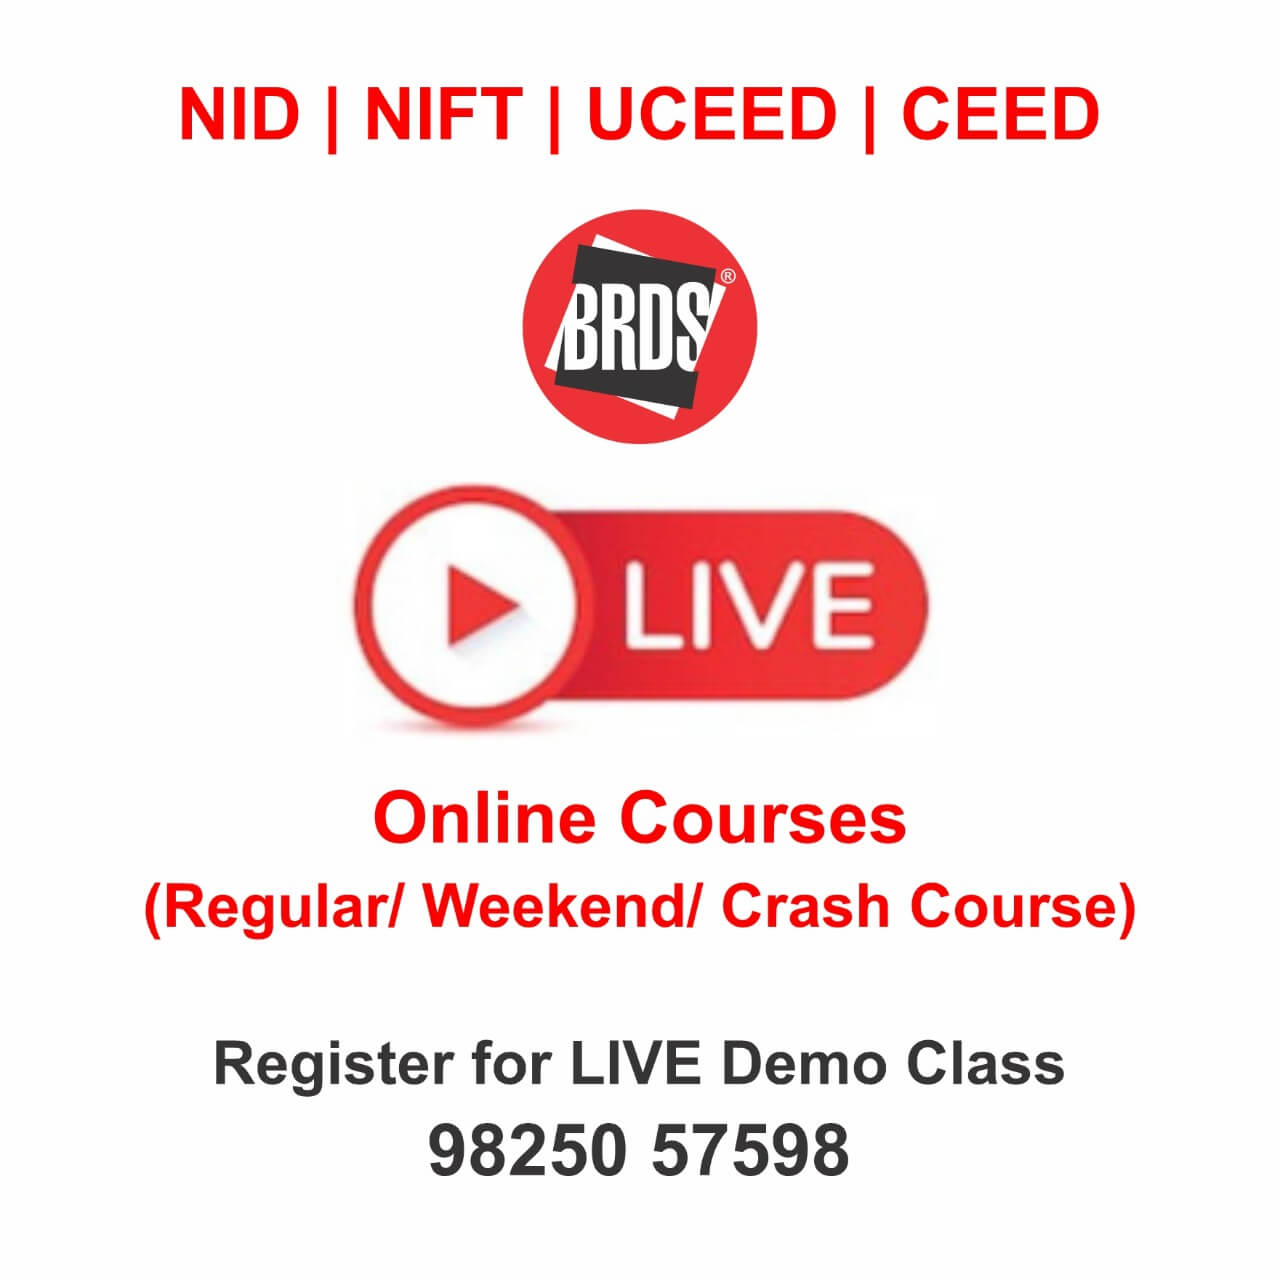 BRDS Live Online Classes